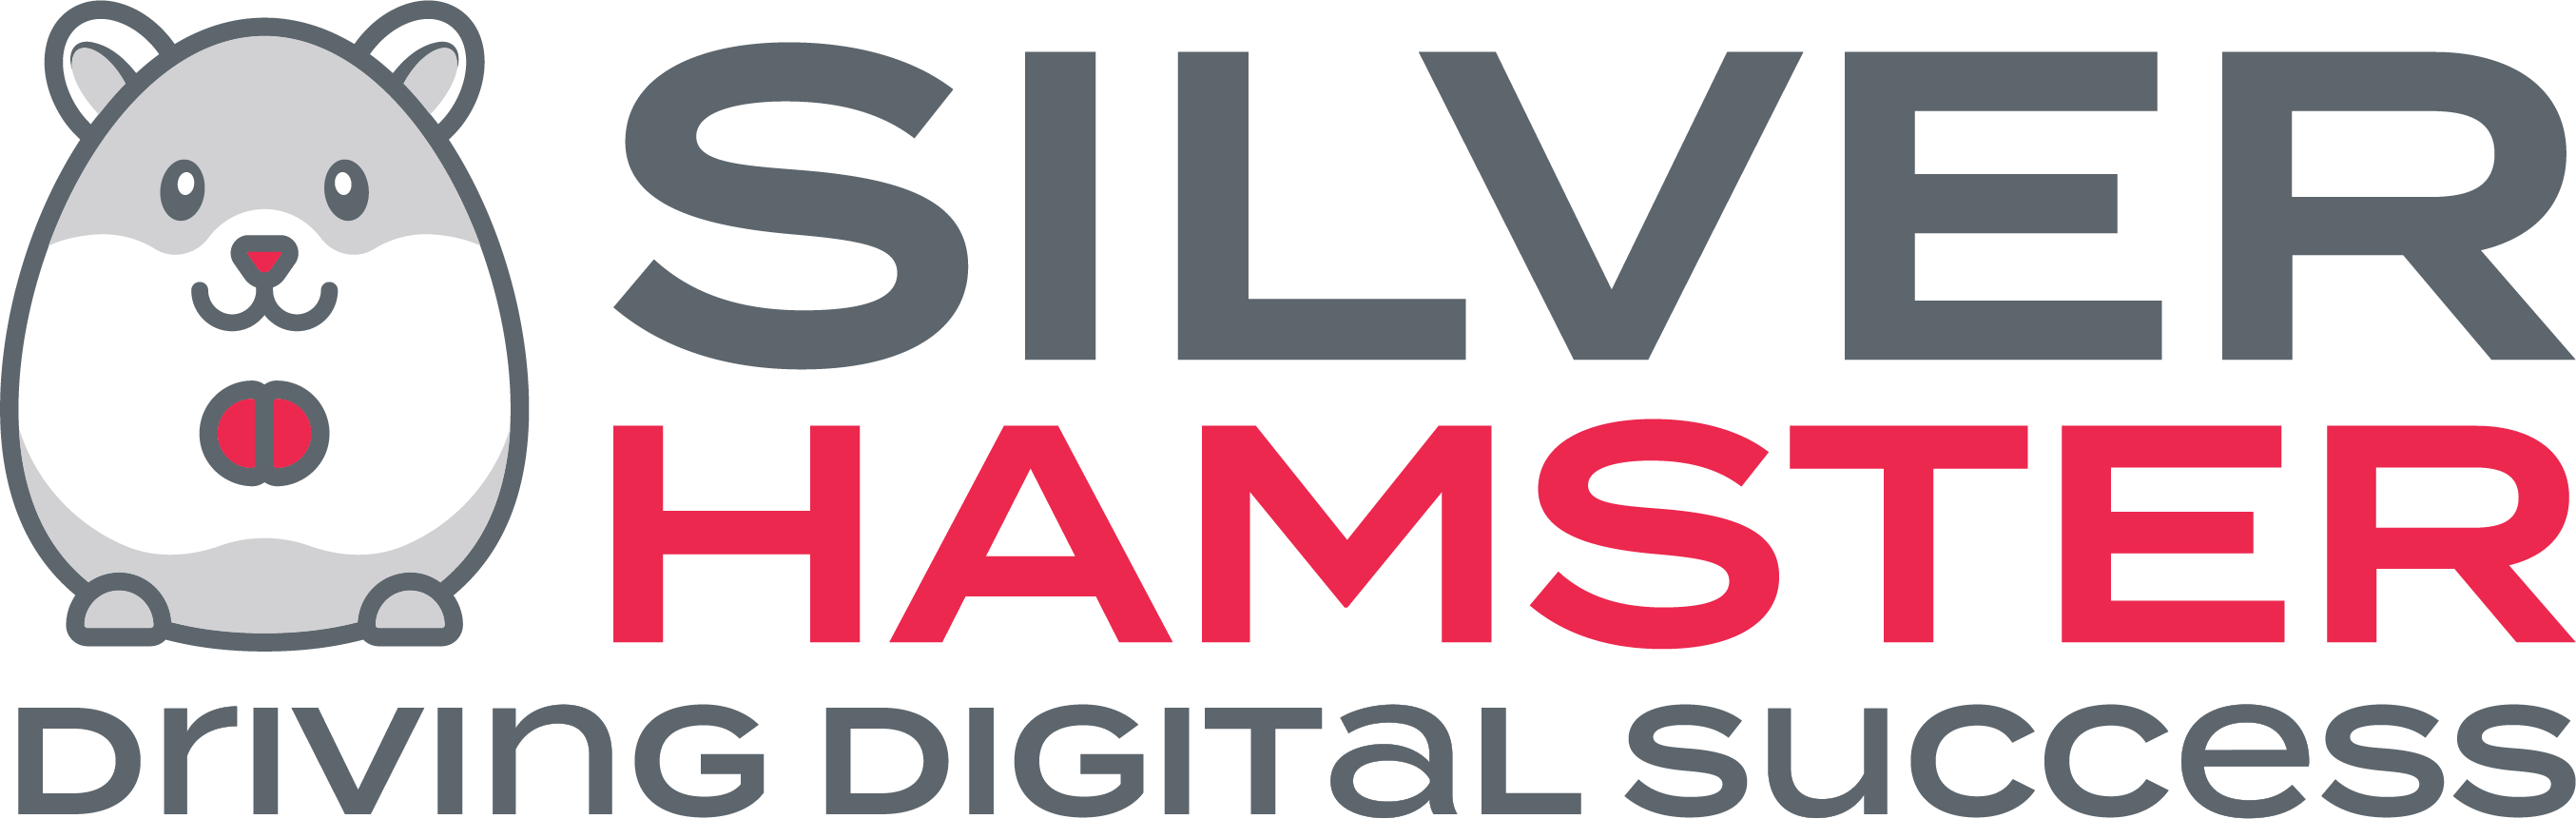 sh-logo